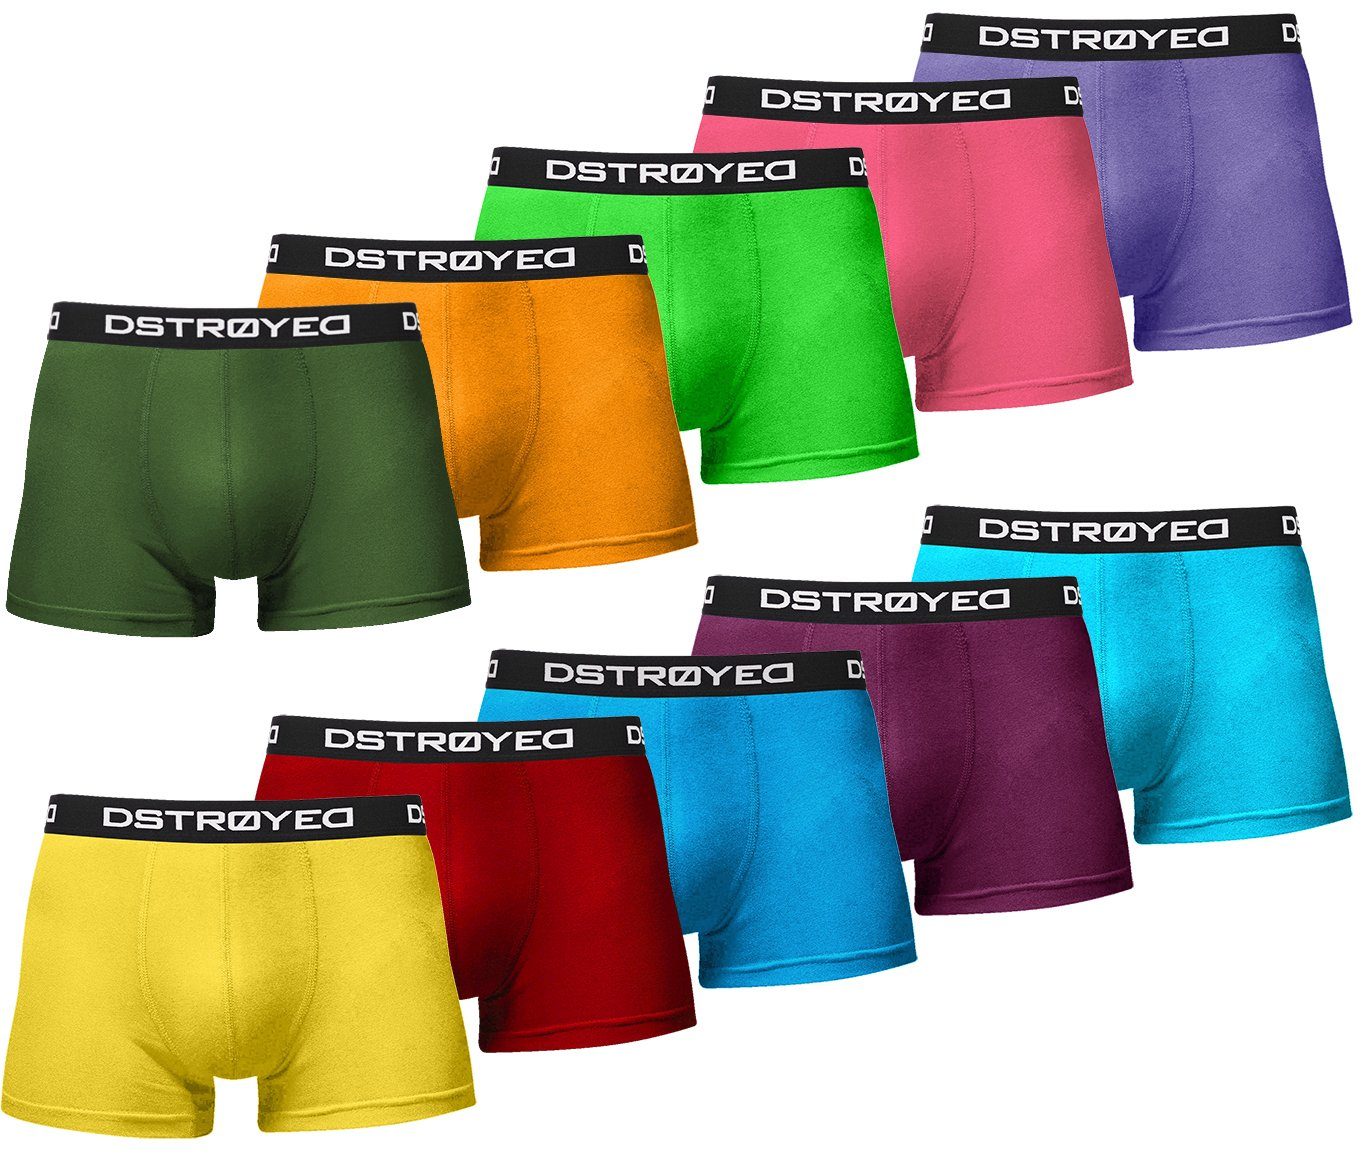 DSTROYED Boxershorts Herren Männer Unterhosen Baumwolle Premium Qualität perfekte Passform (Vorteilspack, 10er Pack) S - 7XL